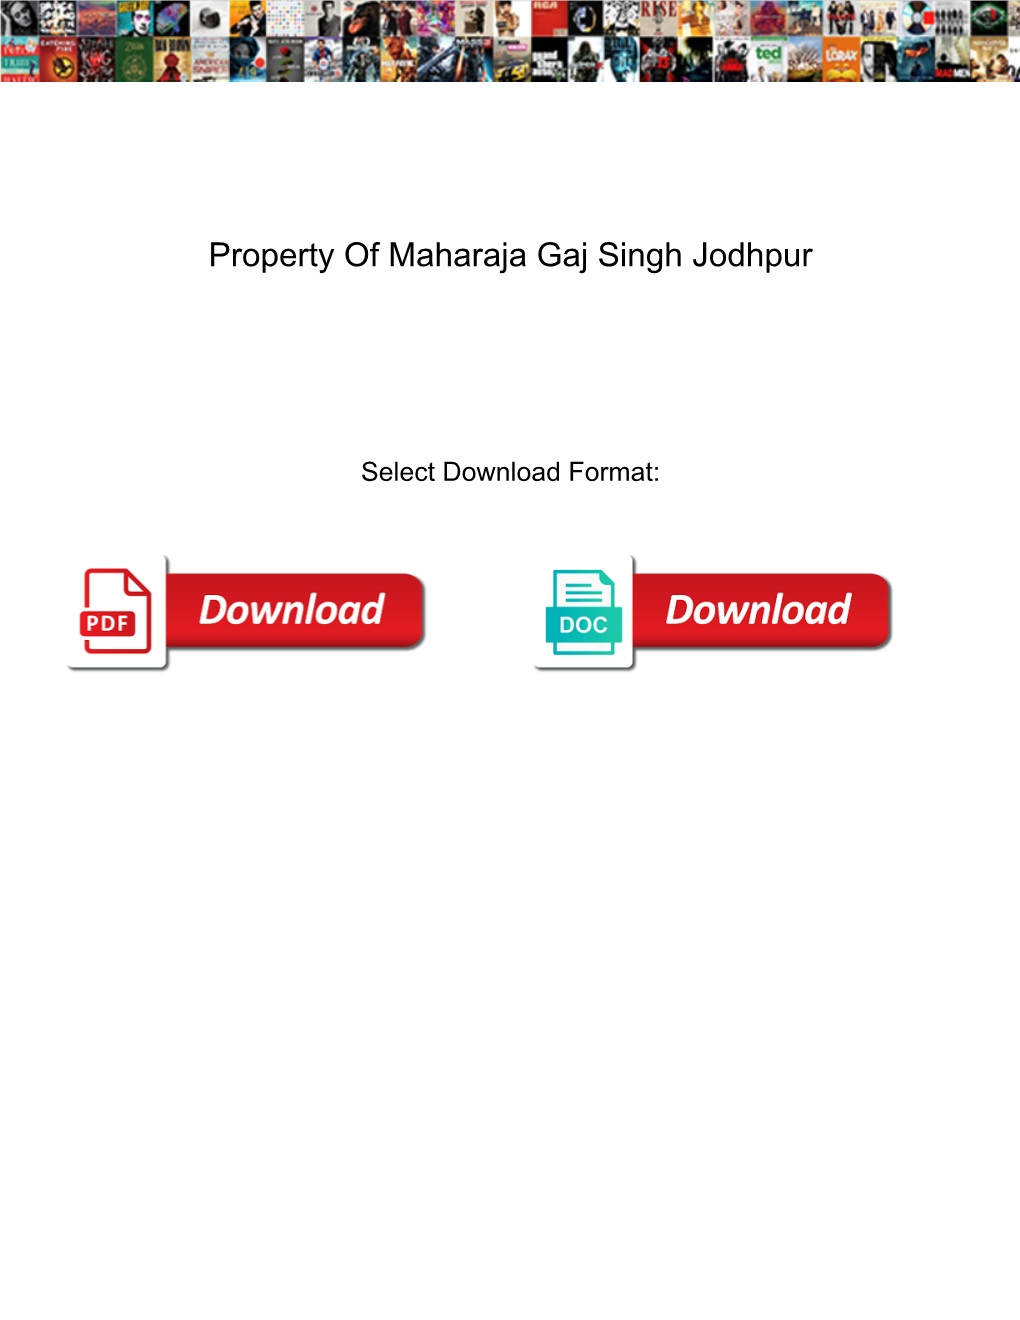 Property of Maharaja Gaj Singh Jodhpur